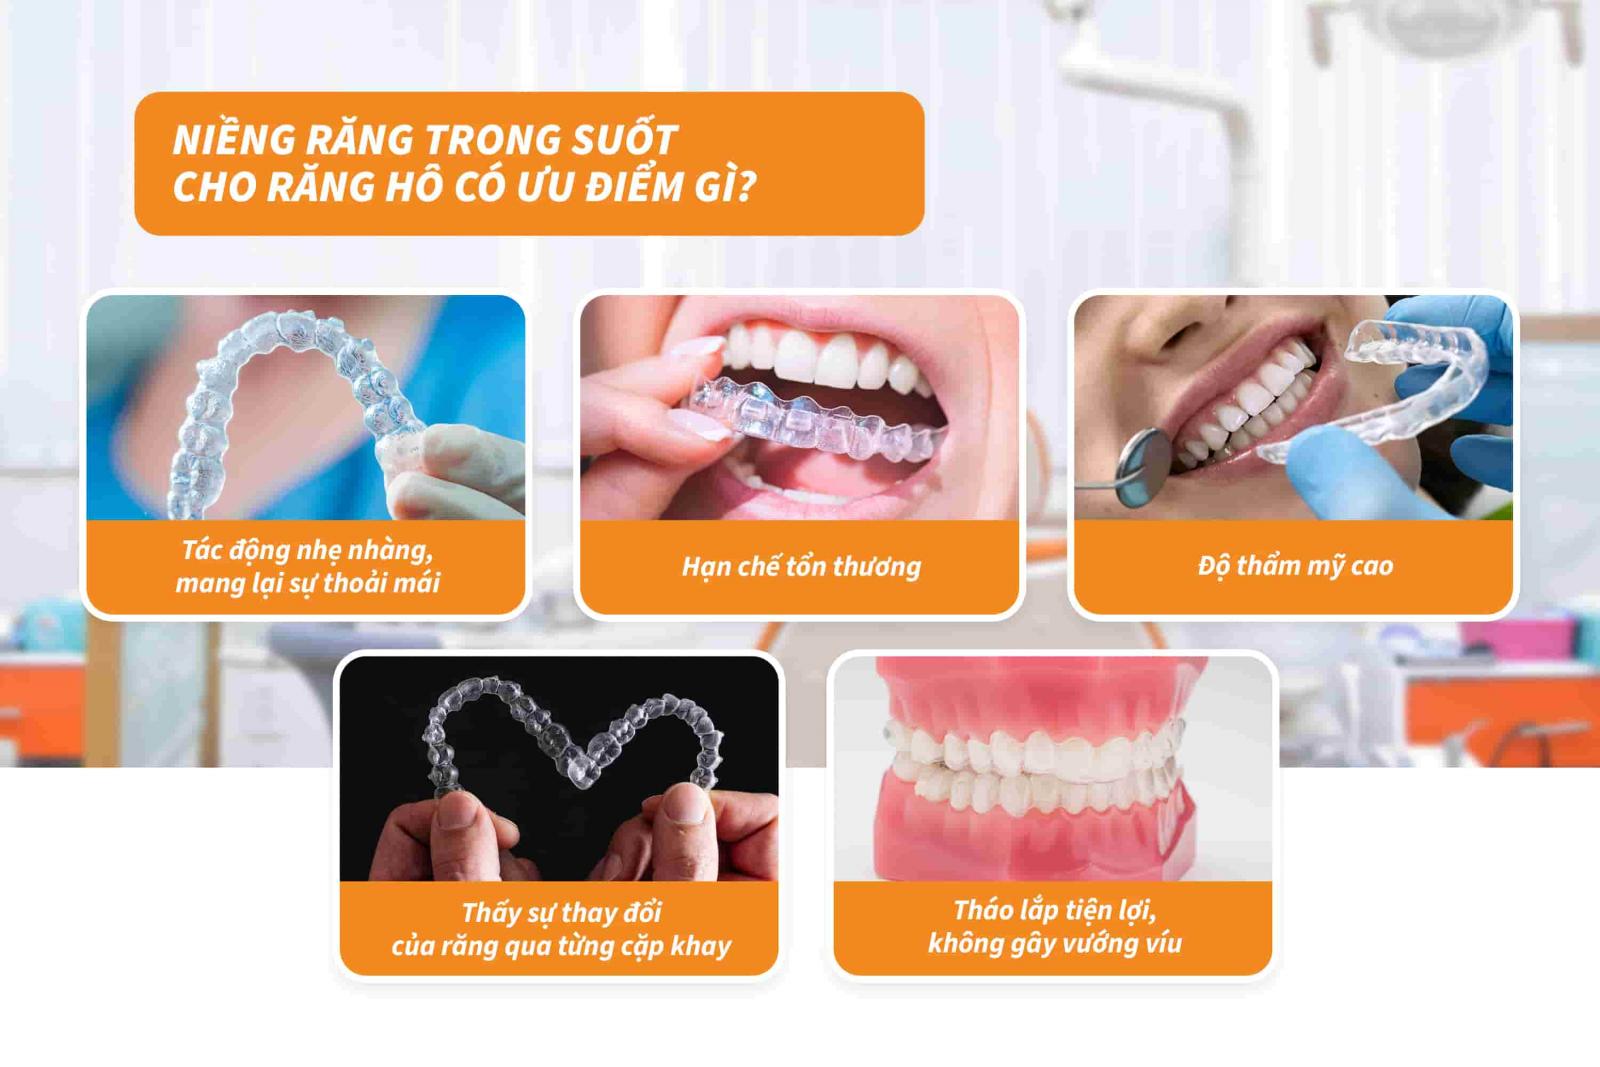 Niềng răng trong suốt cho răng hô có ưu điểm gì?